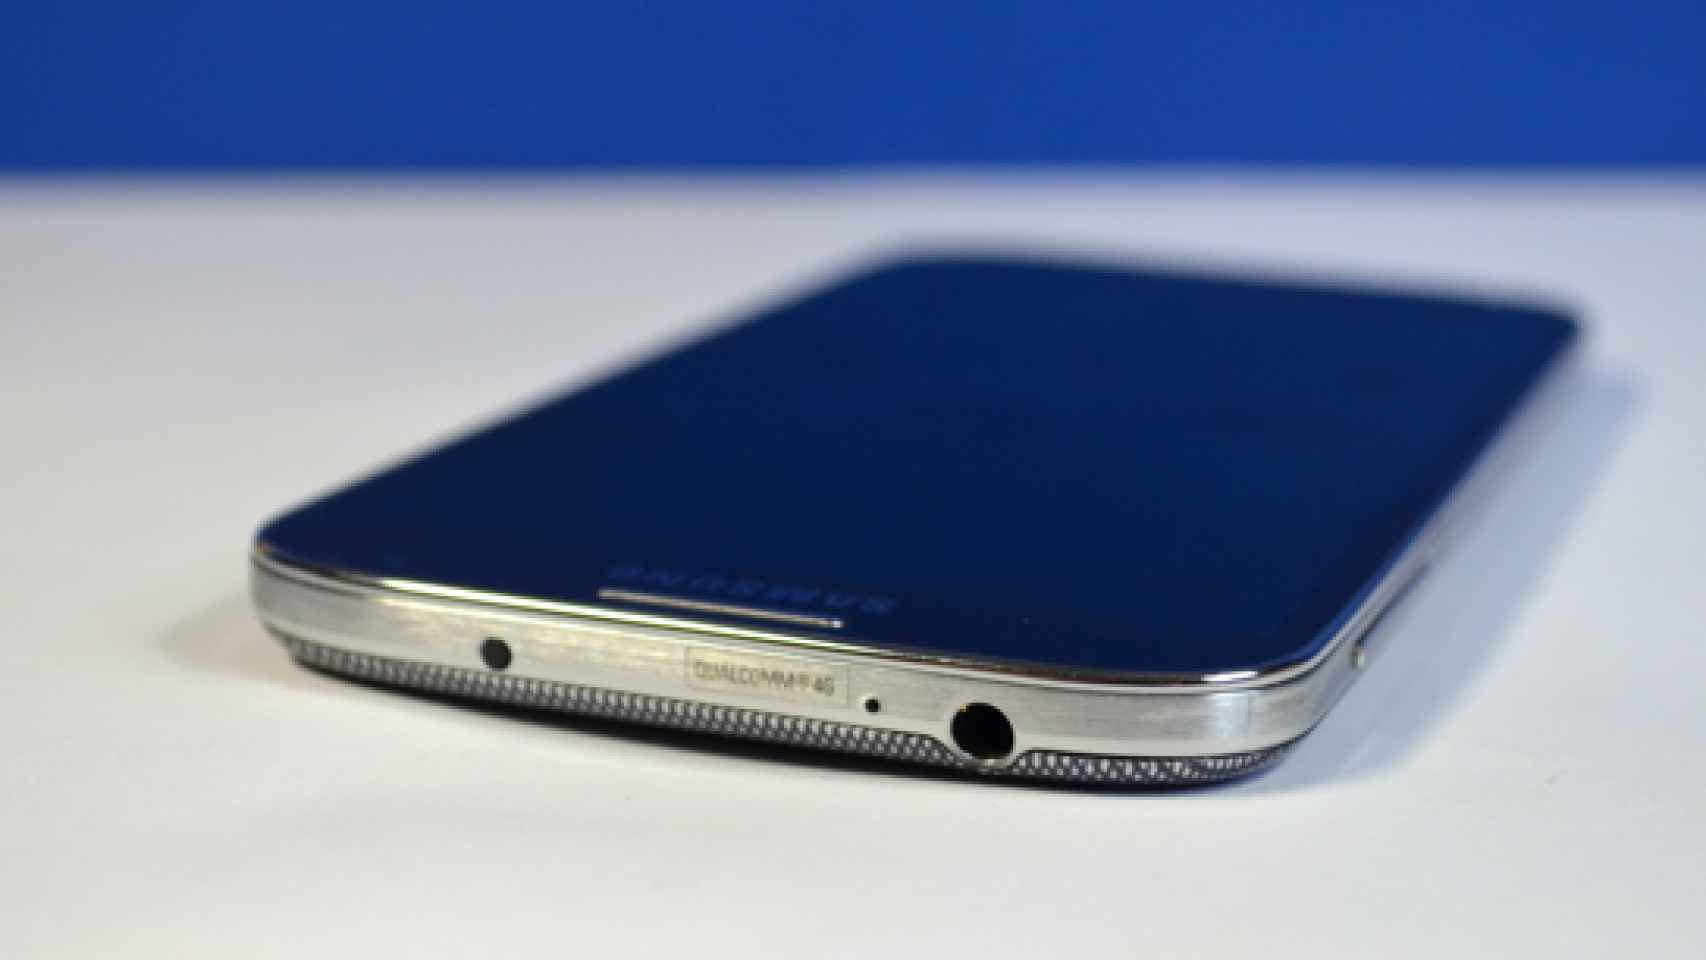 Samsung Galaxy S5: Sensor de huellas, pantalla 2K y nuevas apps en las últimas filtraciones